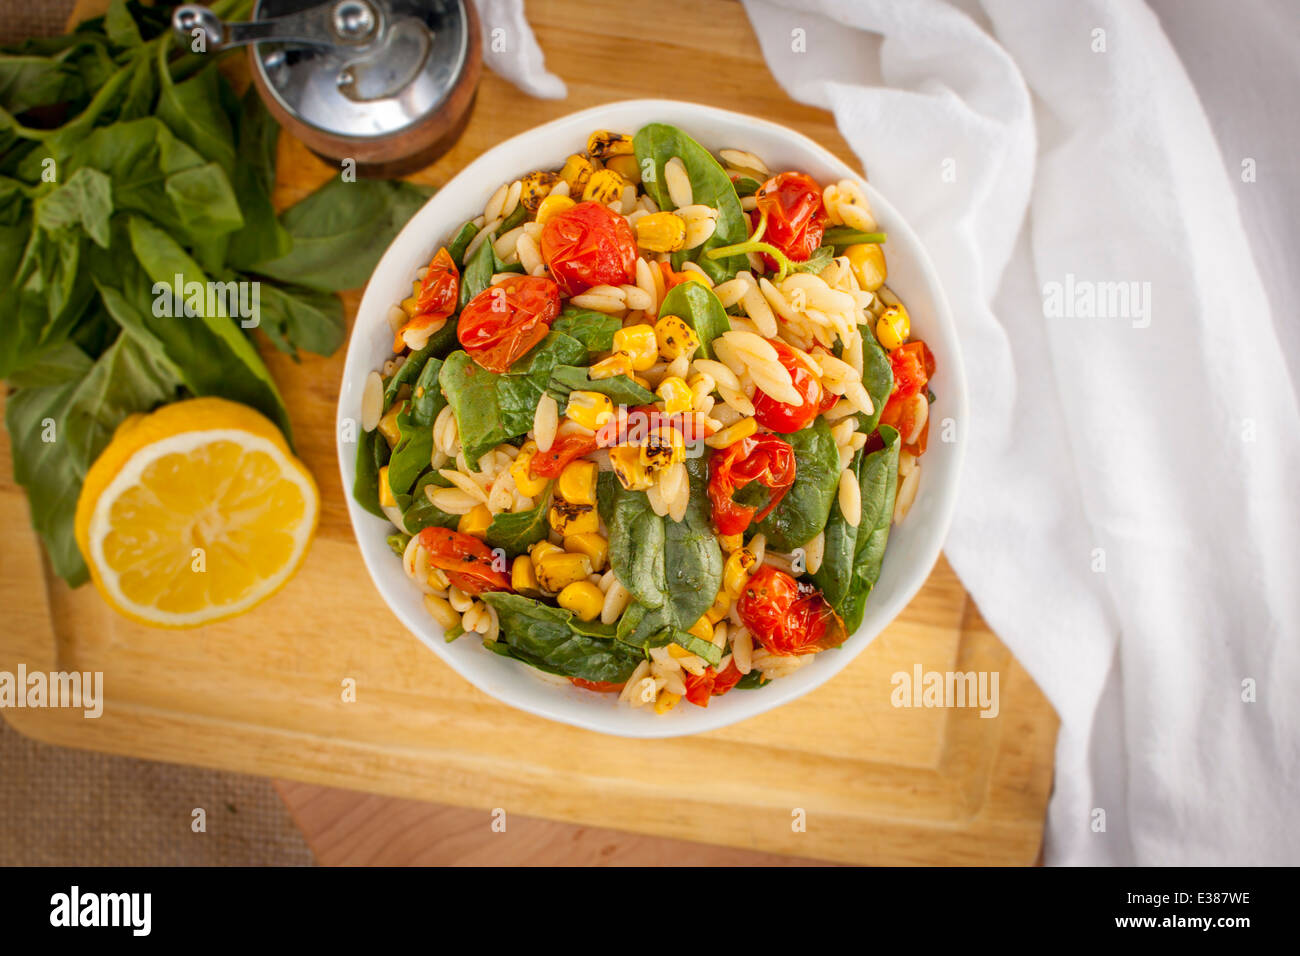 Insalata di orzo con spinaci e pomodori su un tagliere con contorni Foto Stock